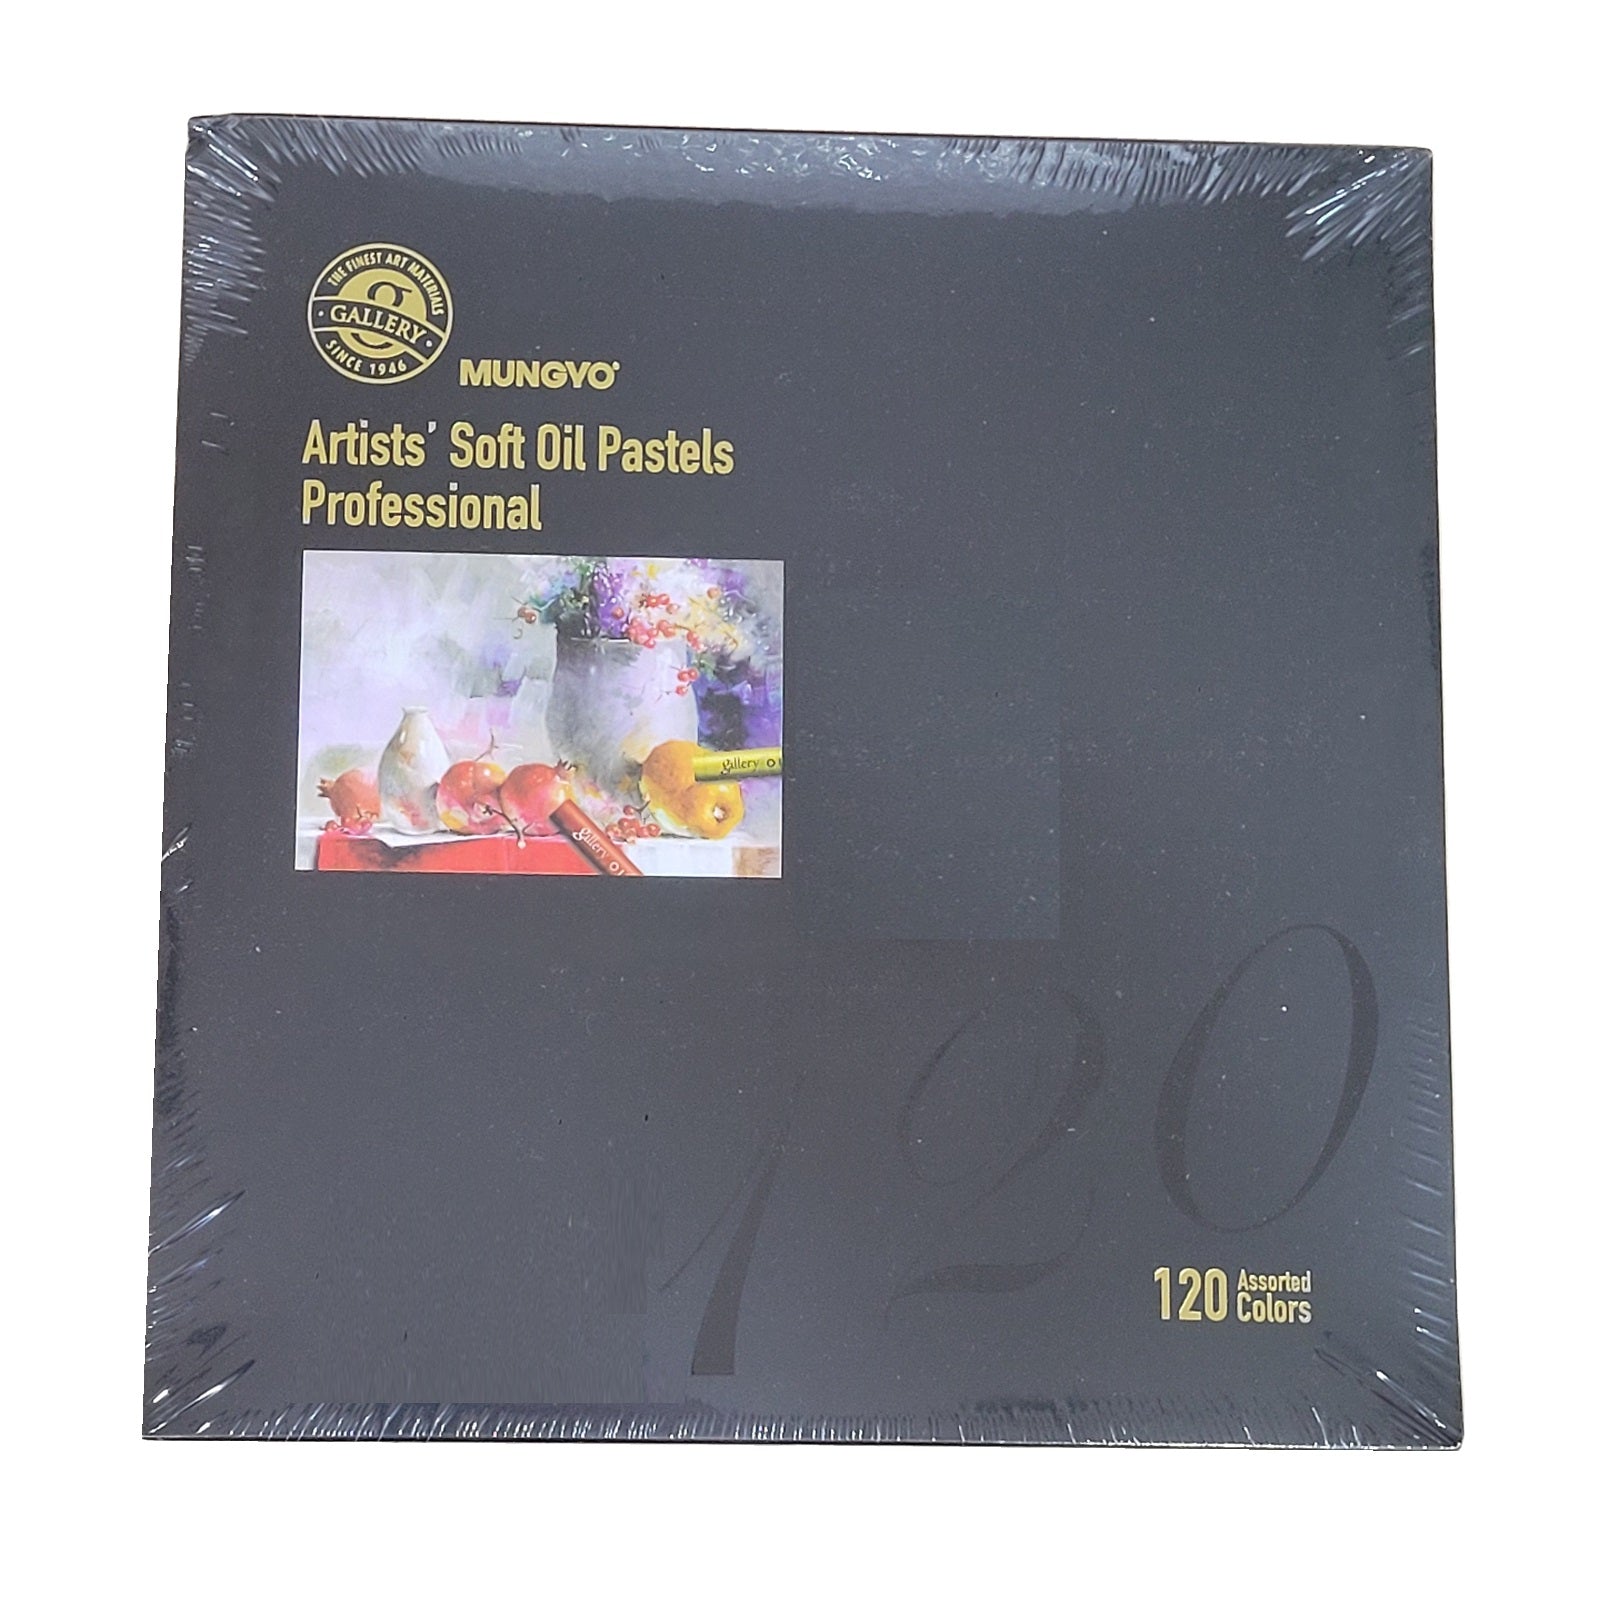 ムンギョ ギャラリー アーティストソフトオイルパステル 120色ラウンドタイプパステル 紙パッケージ